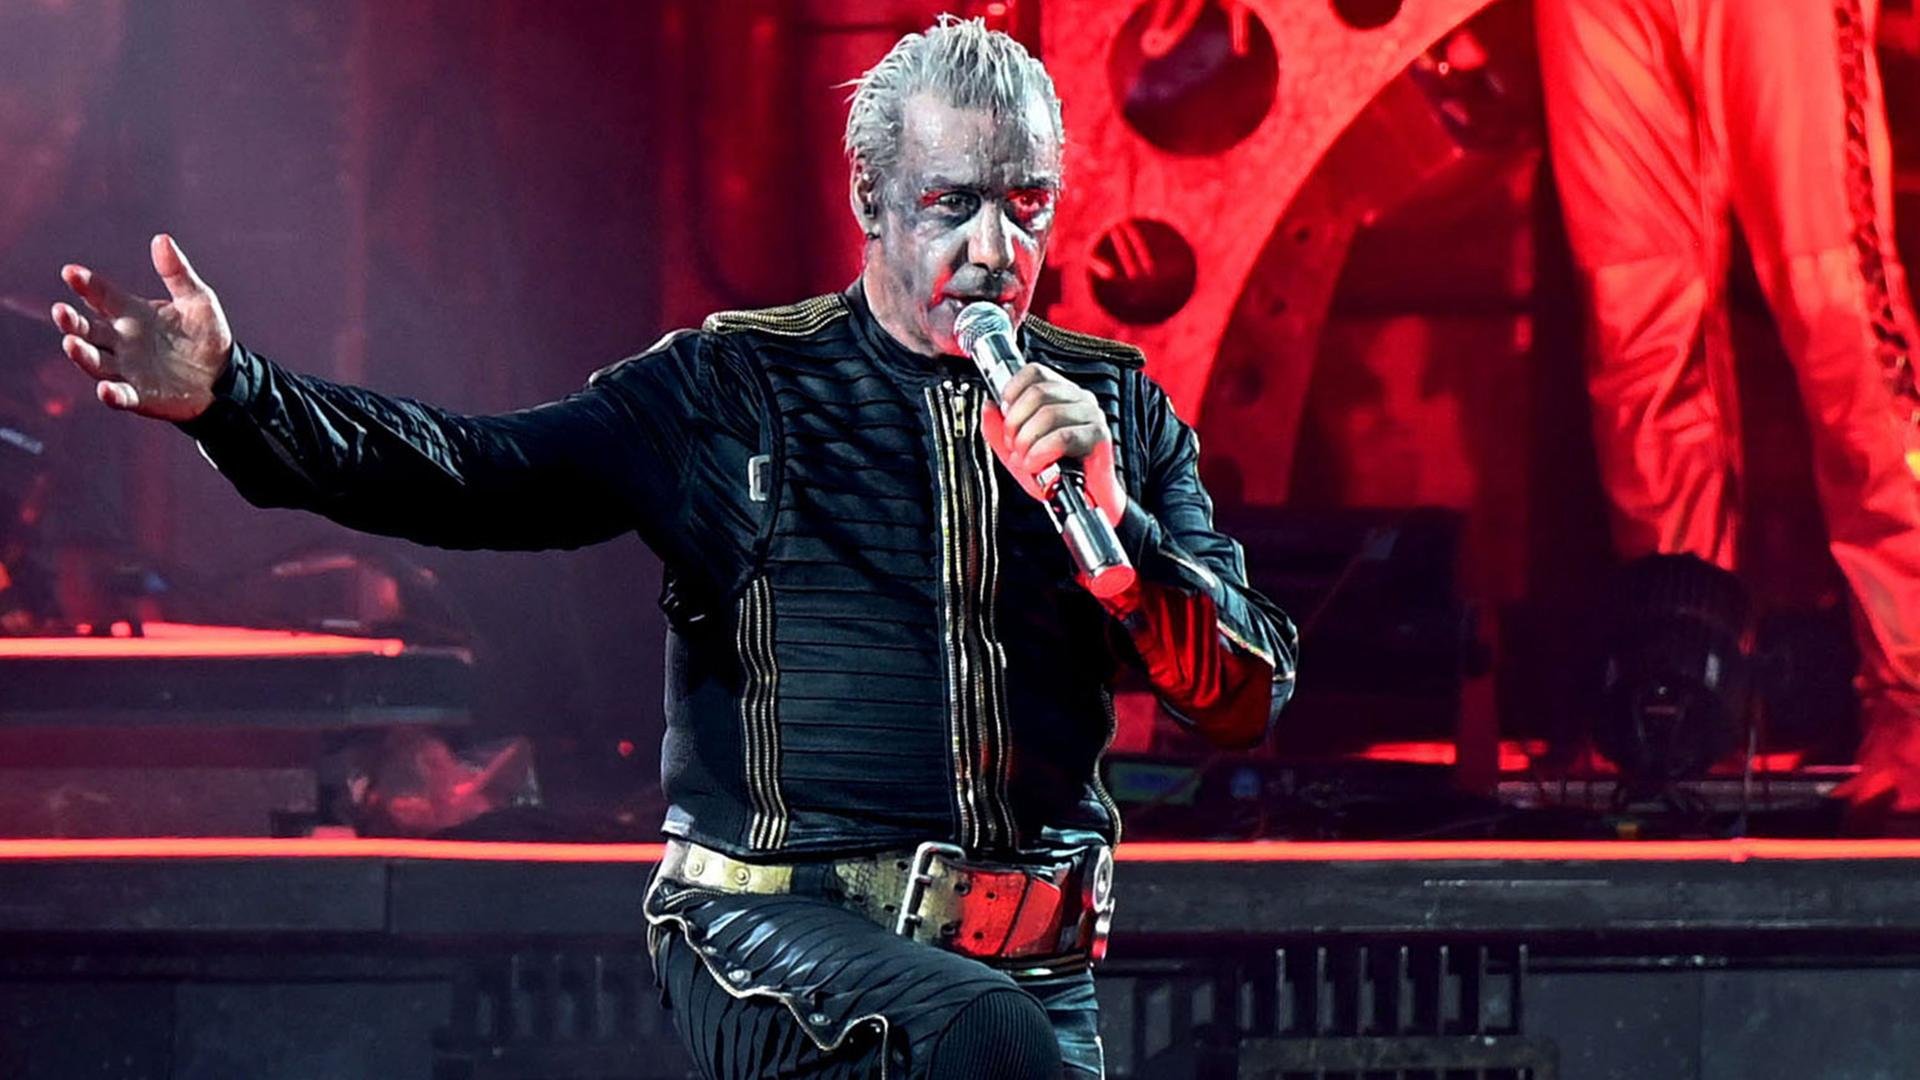  Solistul formaţiei Rammstein, Till Lindemann, acuzat de agresiune sexuală de zece femei